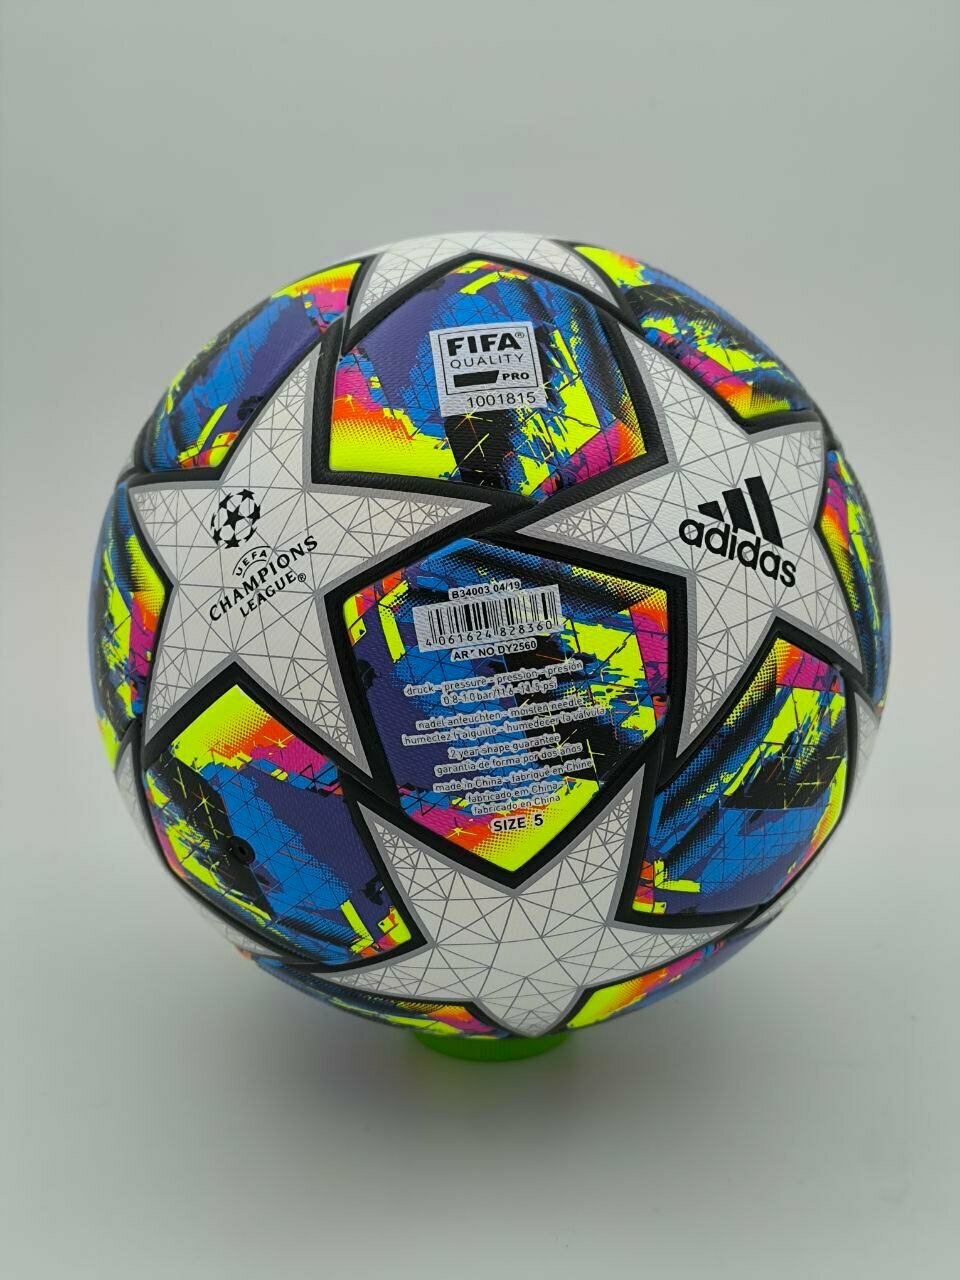 Футбольный мяч CHAMPIONS LEAGUE FIFA "Премиум класса" 5 размера, разно-цветный